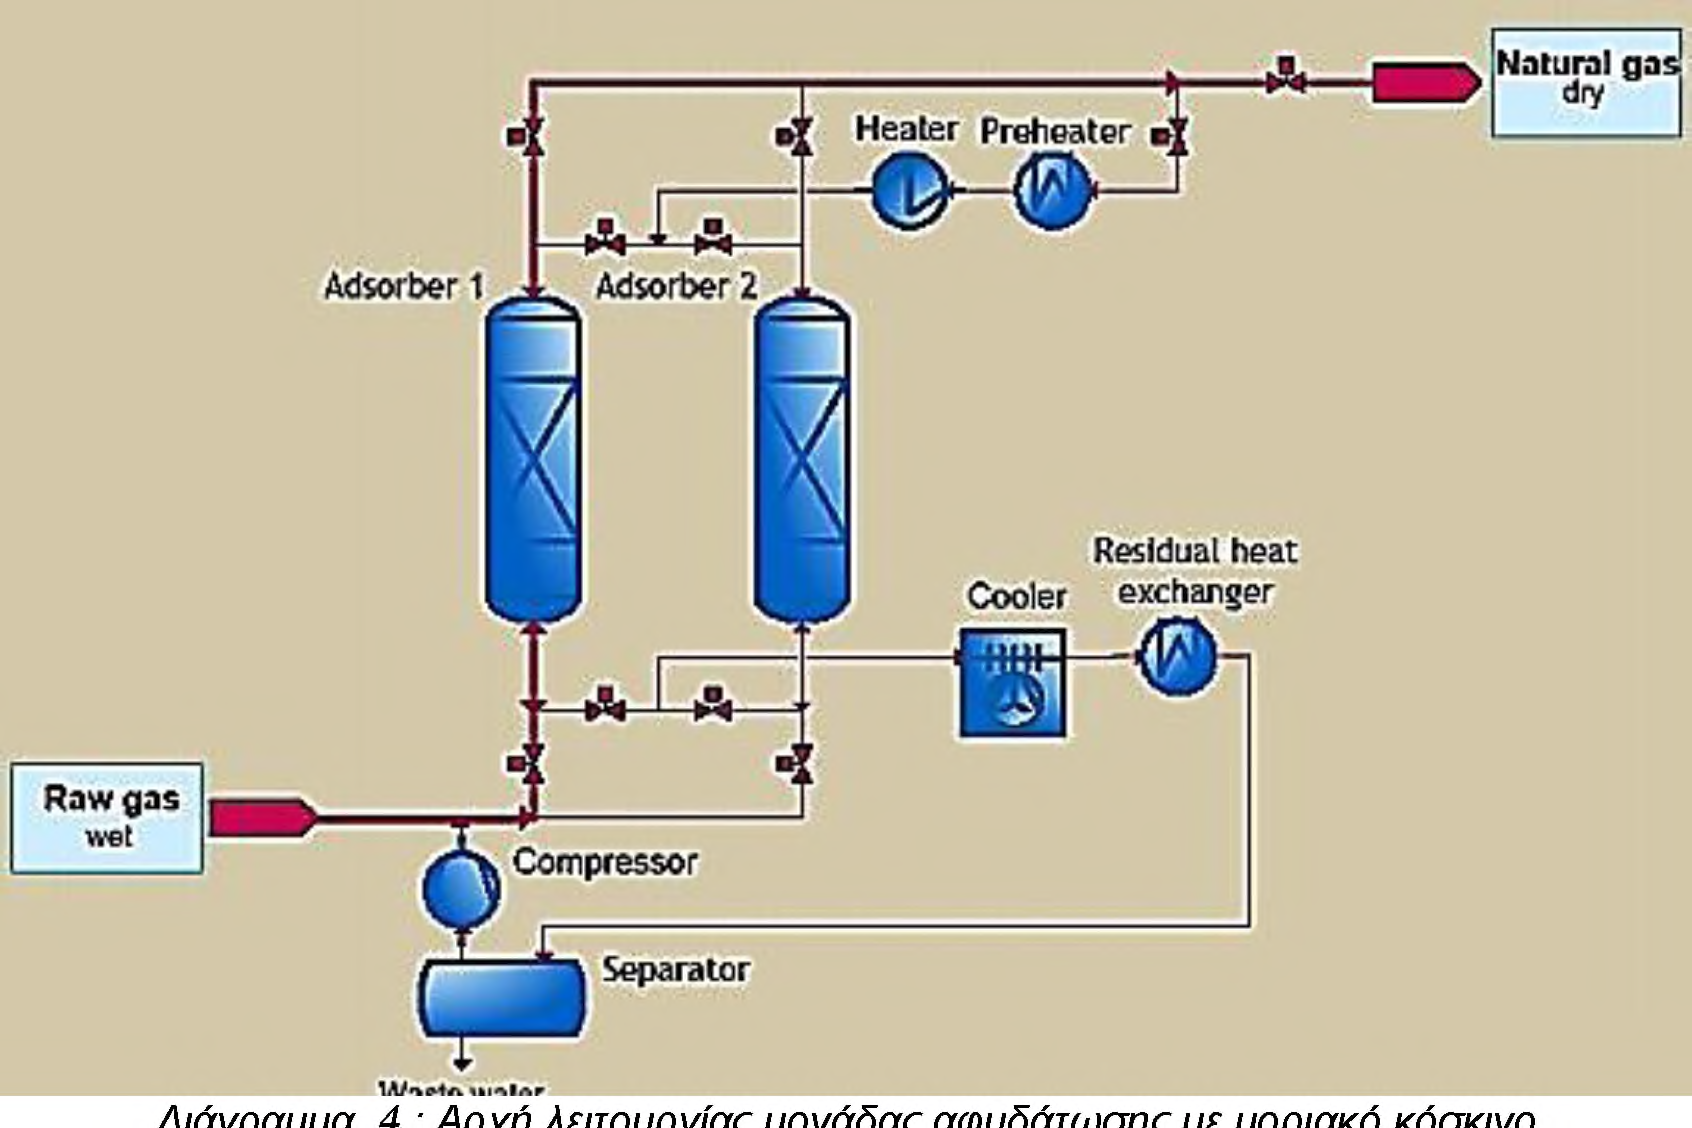 2 Αφυδάτωση TEG Η έκπλυση του υγρού αερίου με γλυκόλη (στις περισσότερες περιπτώσεις TEG - τριαιθυλενογλυκόλη) είναι μια από τις πιο εφαρμοσμένες τεχνολογίες αφυδάτωσης για το φυσικό αέριο.